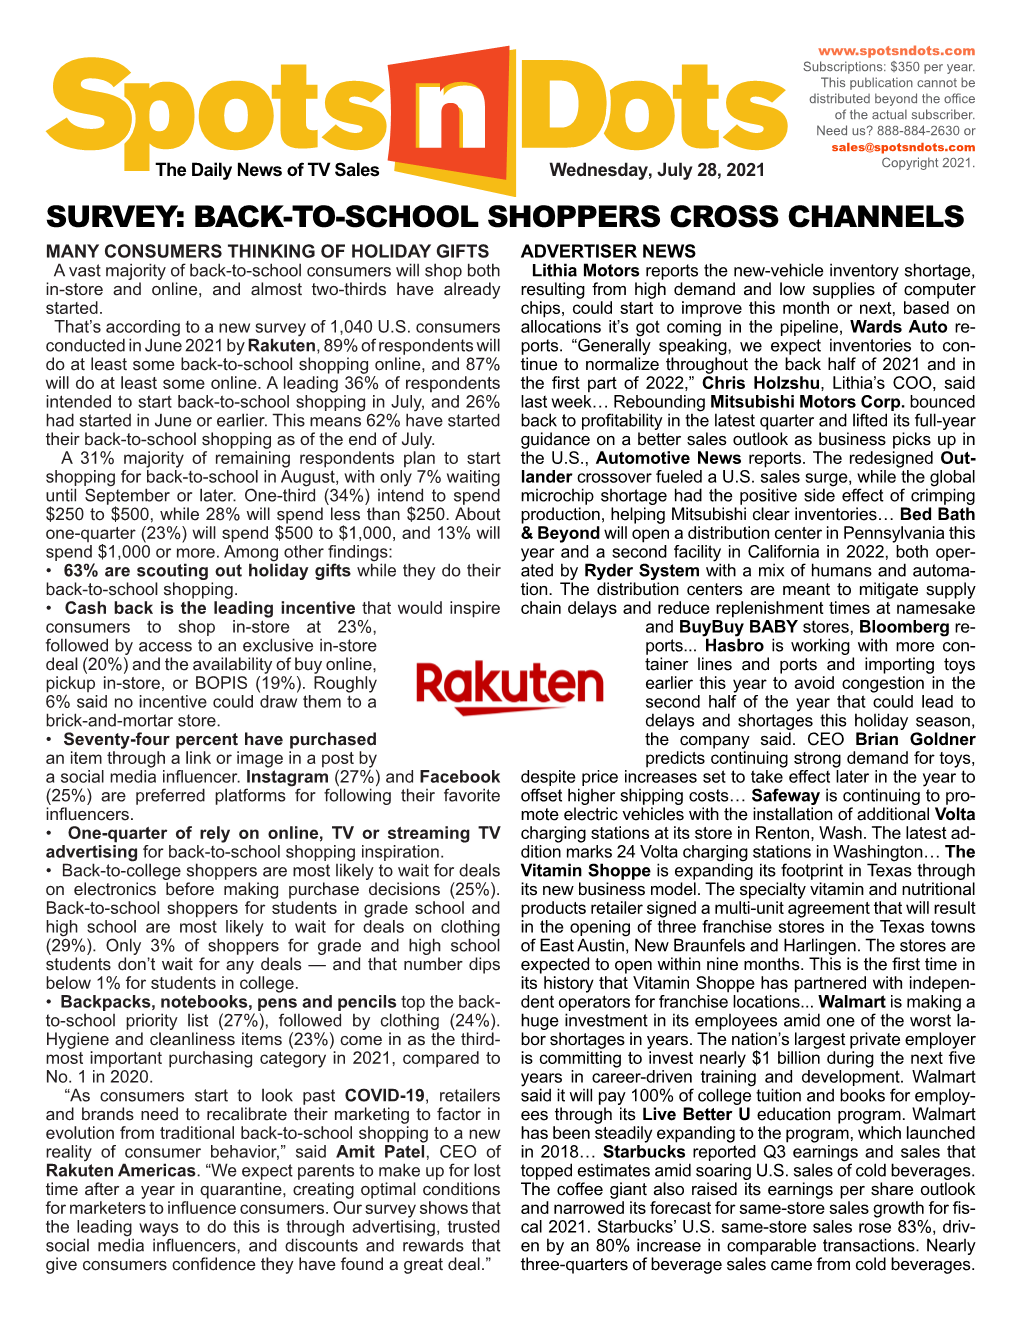 Back-To-School Shoppers Cross Channels